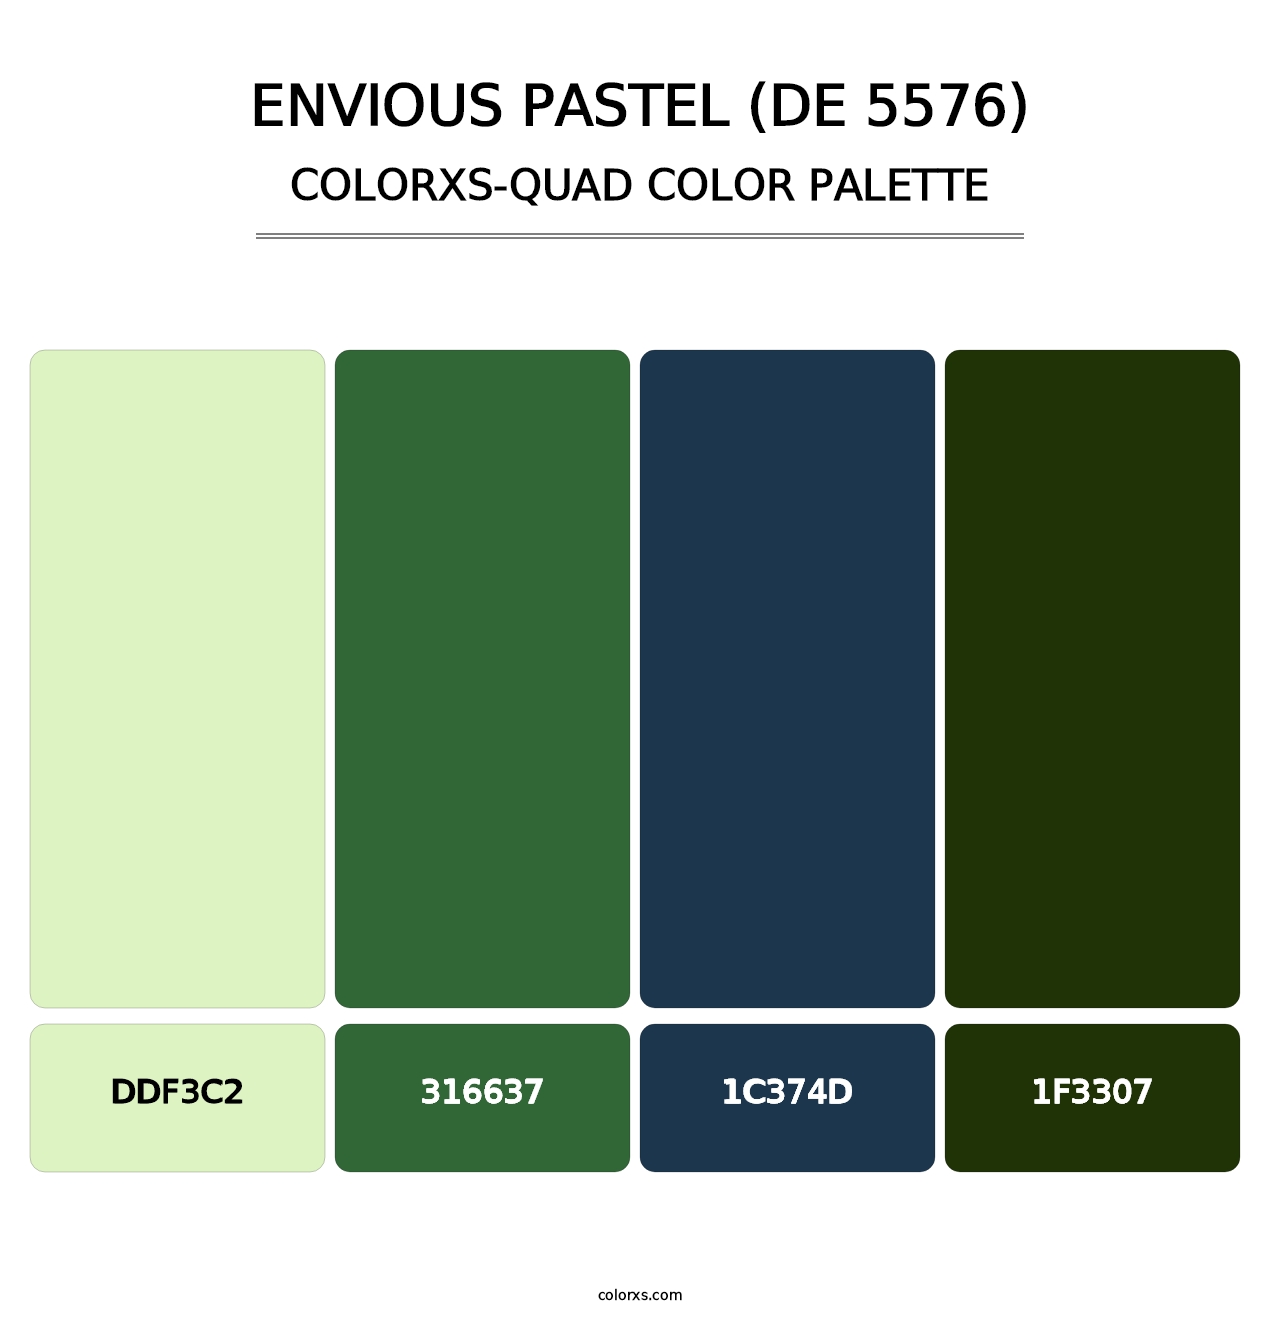 Envious Pastel (DE 5576) - Colorxs Quad Palette